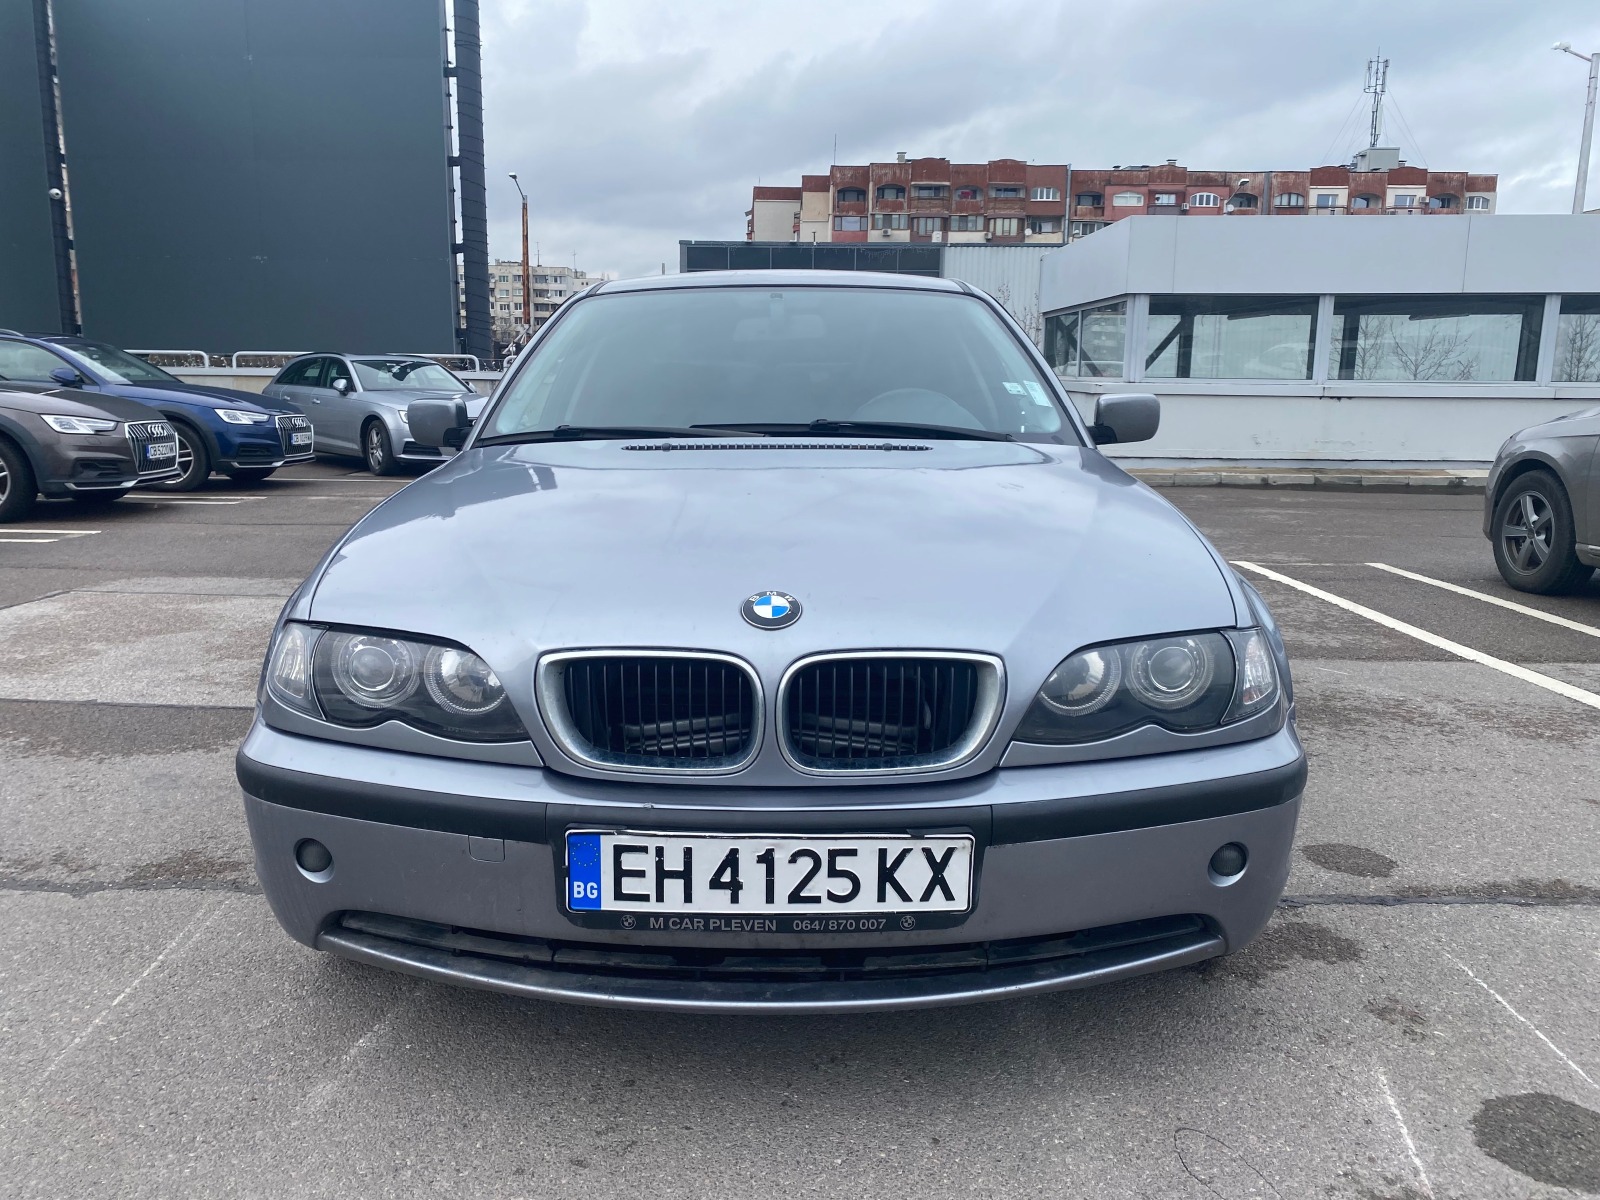 BMW 316 i 1.8 - изображение 1